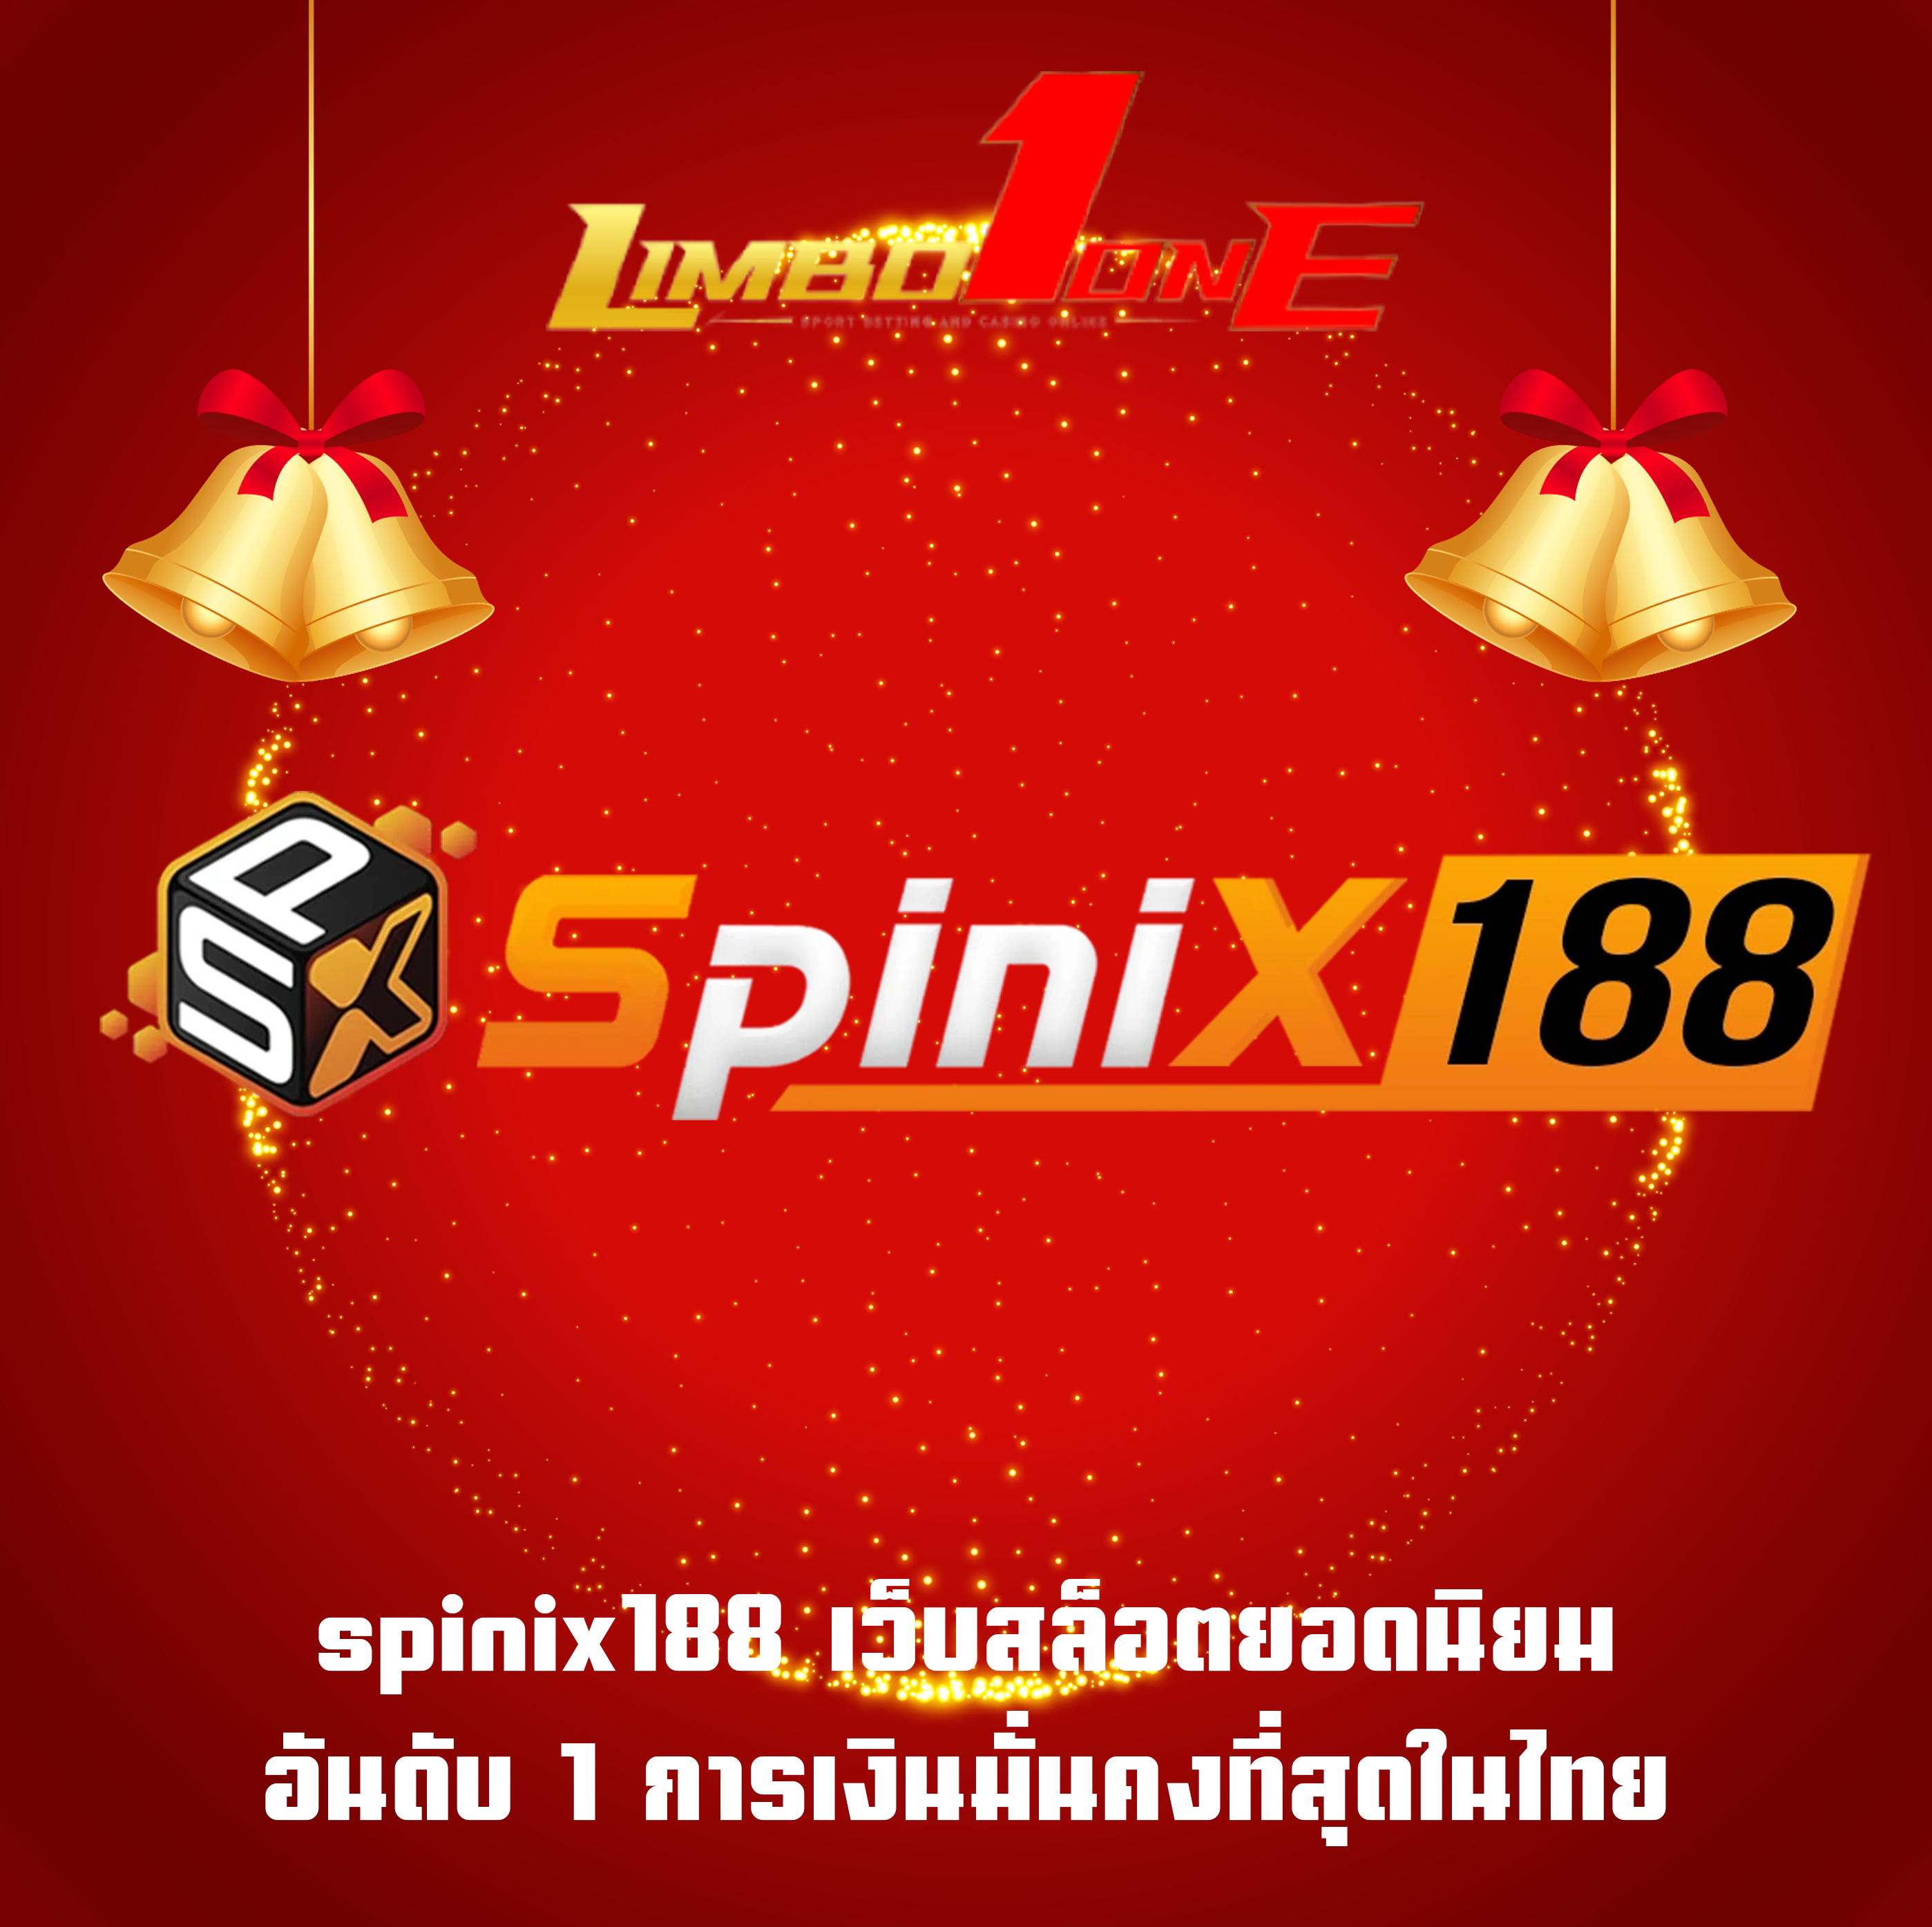 spinix188 เว็บสล็อตยอดนิยม อันดับ 1 การเงินมั่นคงที่สุดในไทย